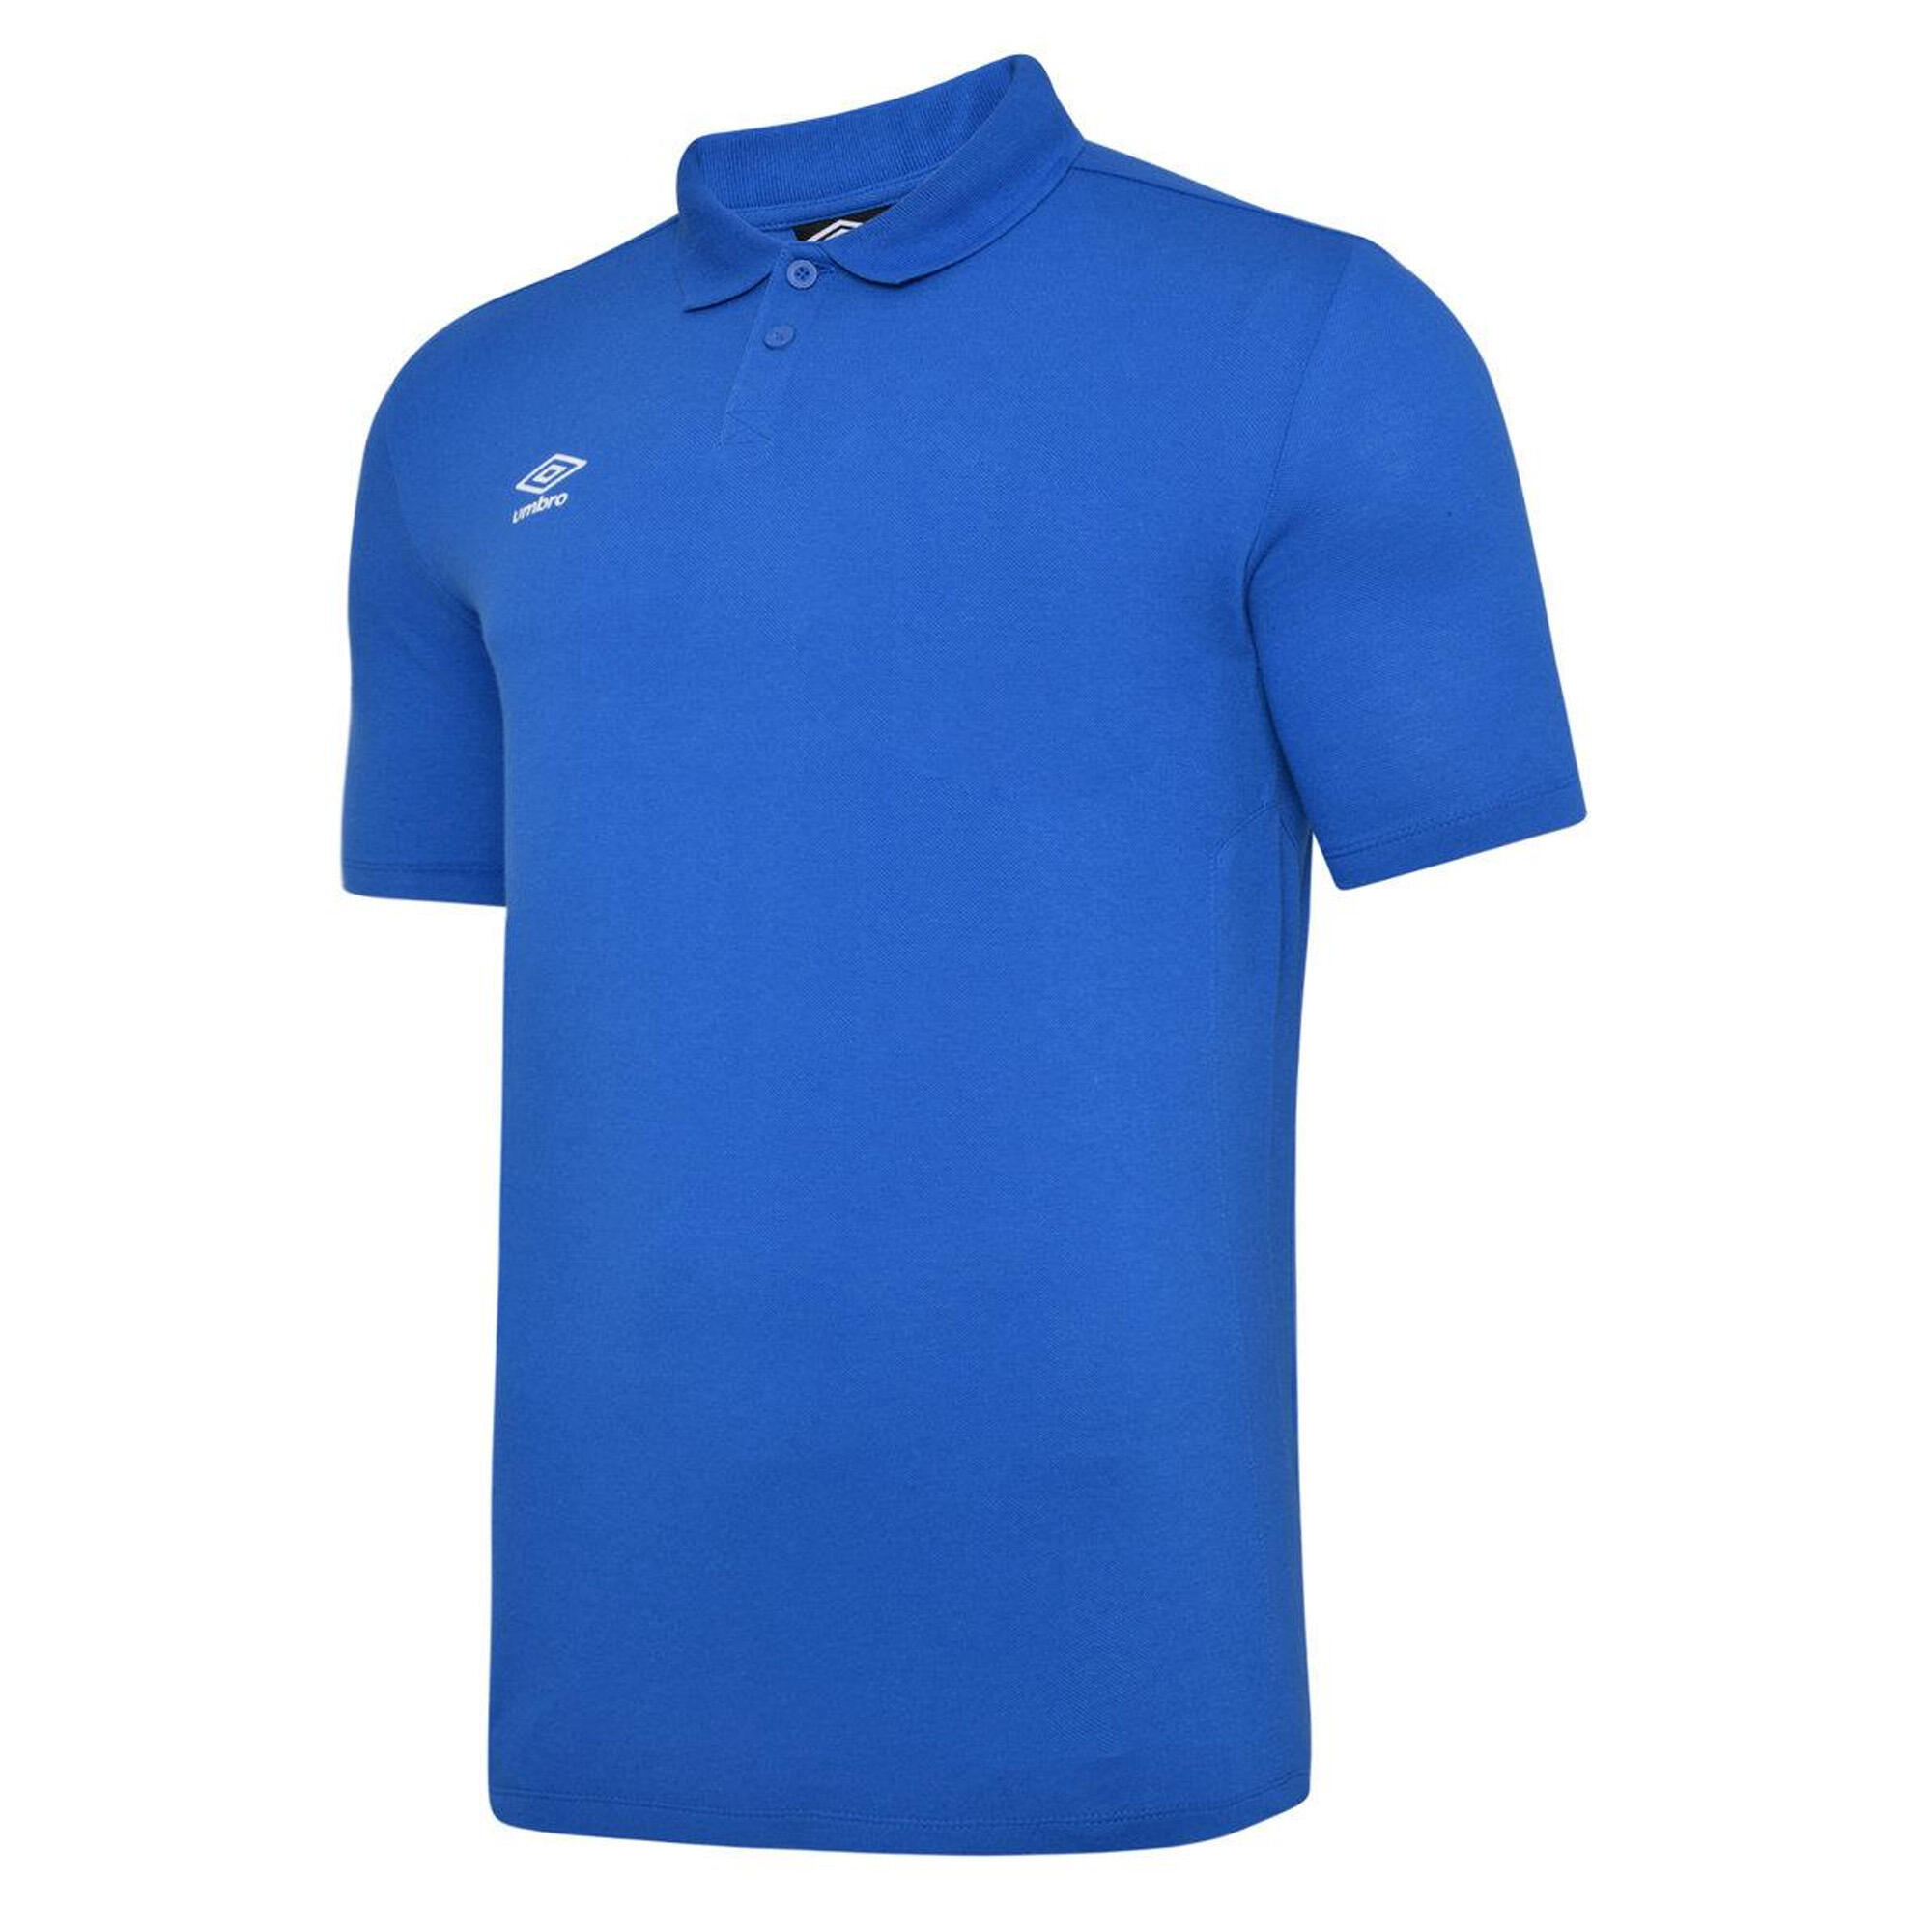 Boys Essential Polo Shirt (Royal Blue/White) 1/3